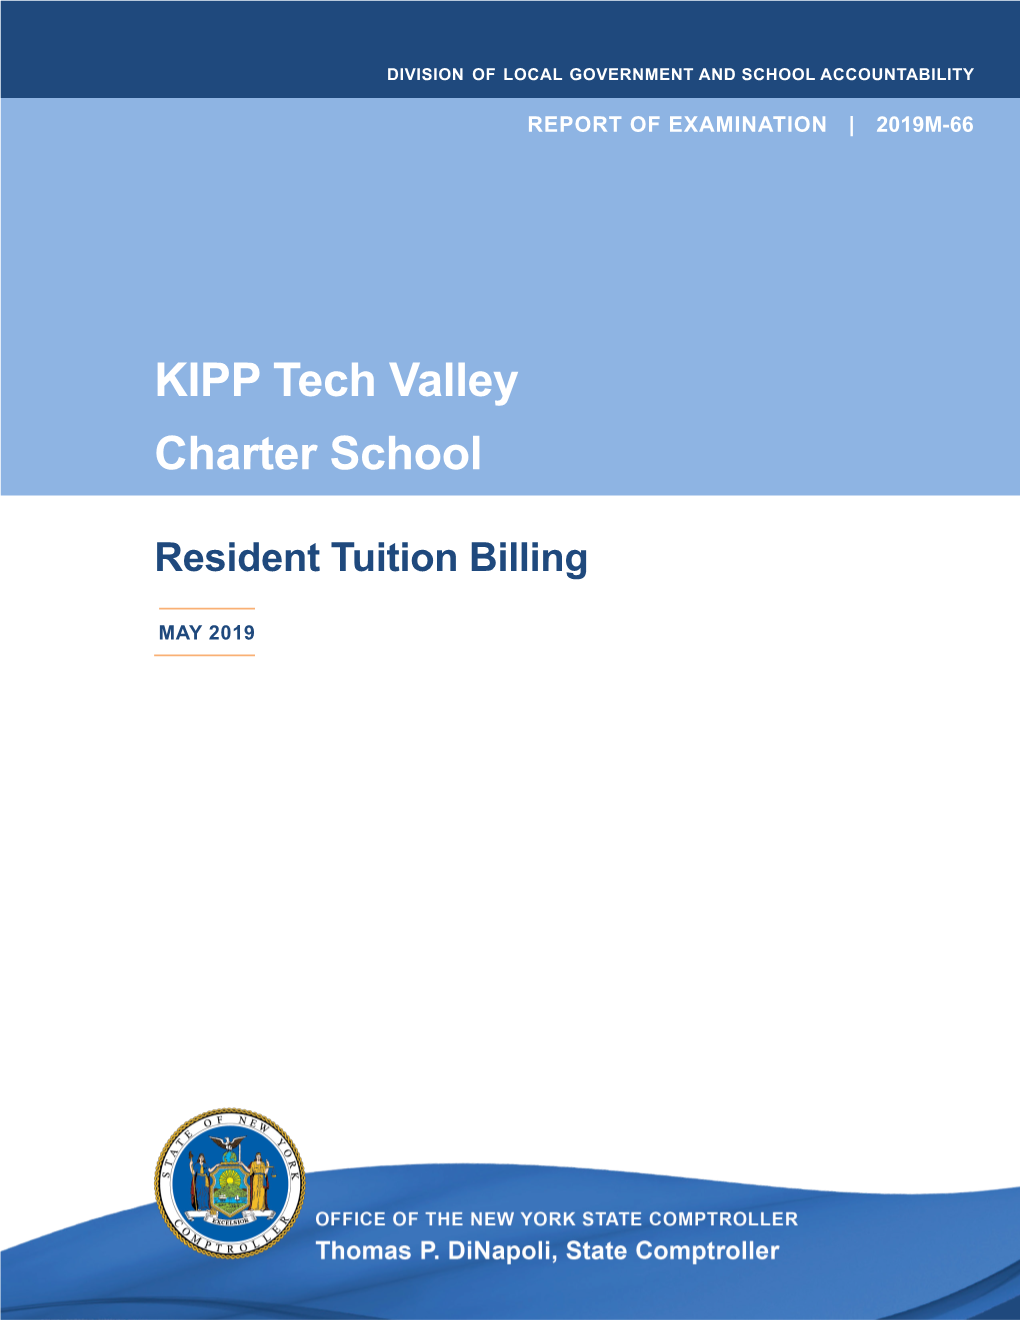 KIPP Tech Valley Charter School